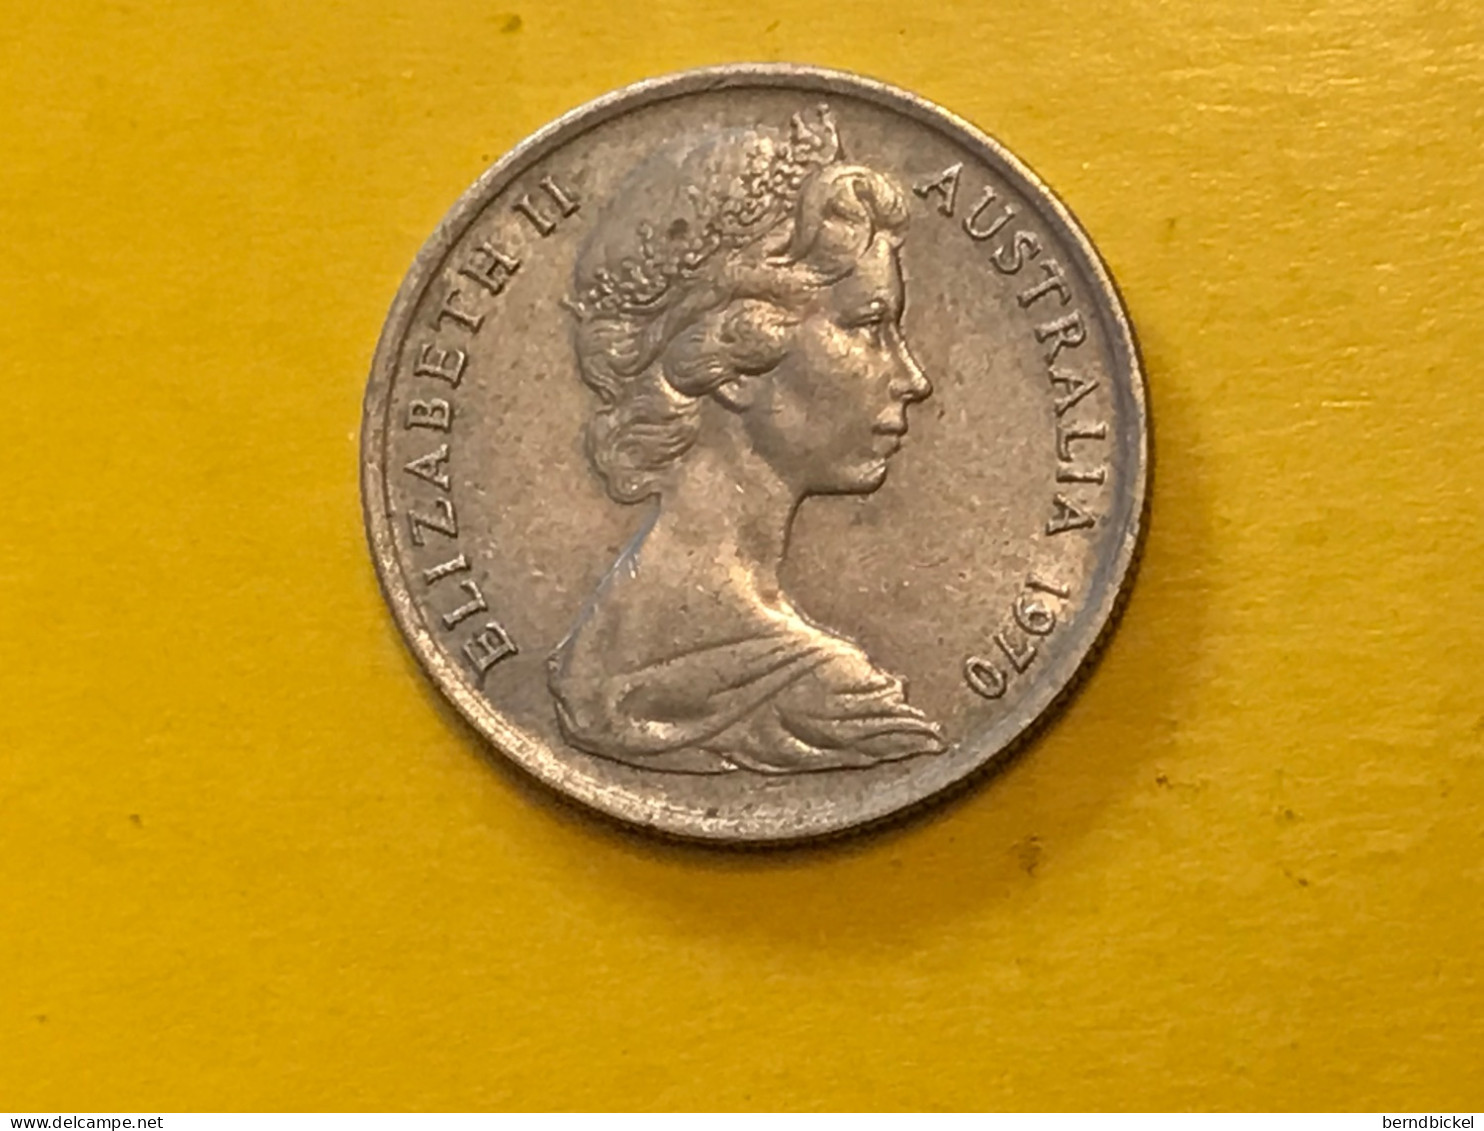 Münze Münzen Umlaufmünze Australien 5 Cents 1970 - 5 Cents